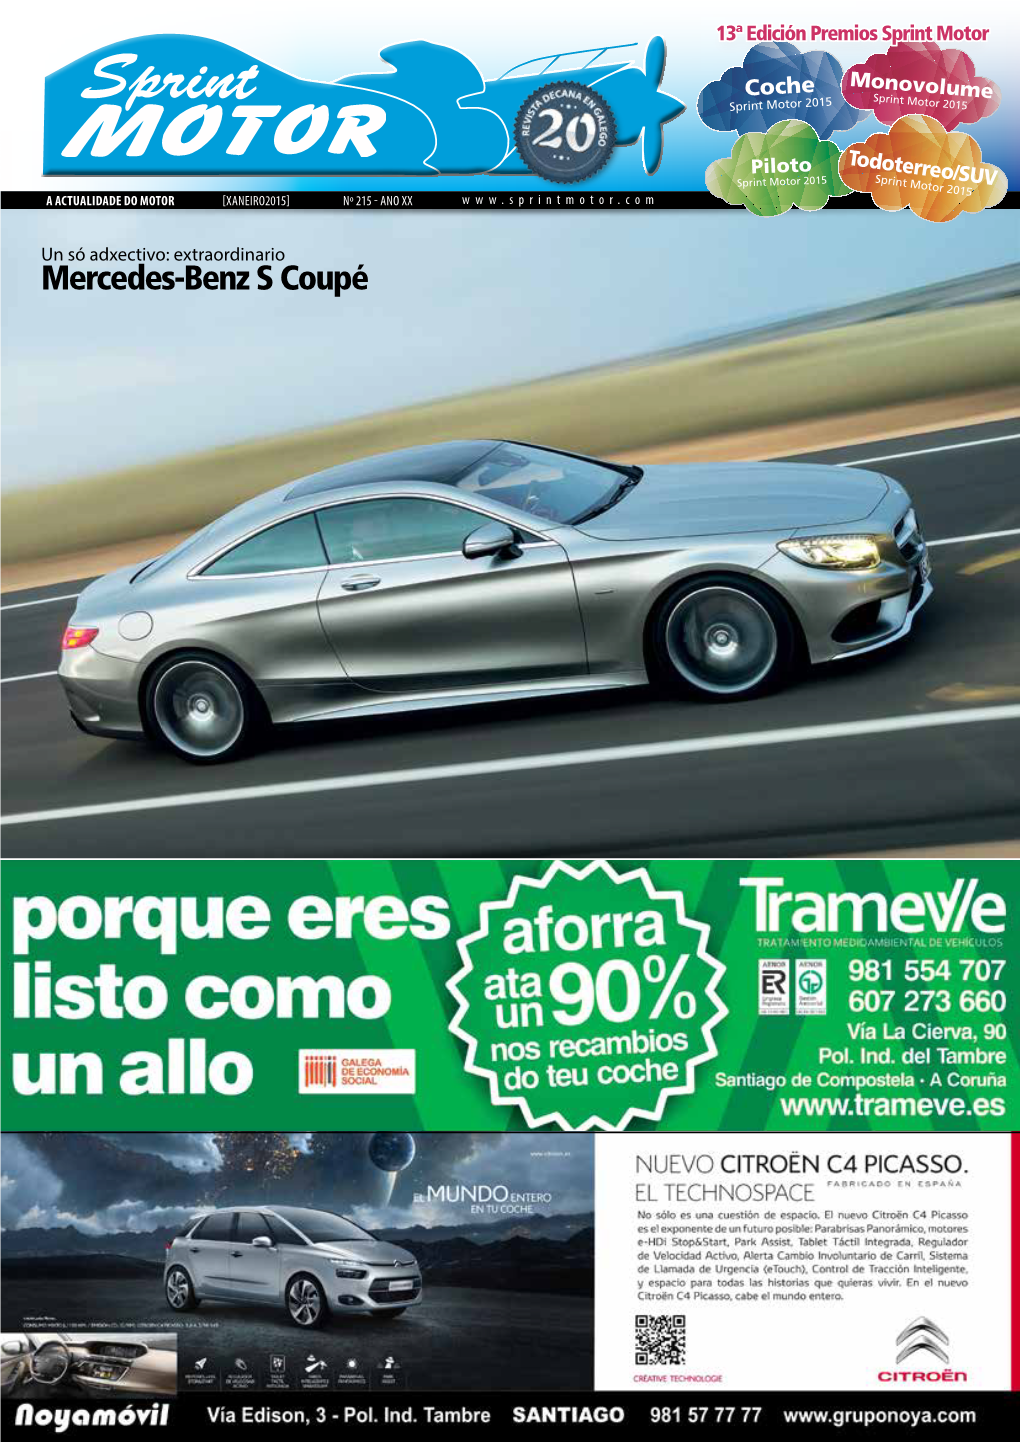 Mercedes-Benz S Coupé 2 Sprint Motor >> Premios 13ª Edición Premios Sprint Motor